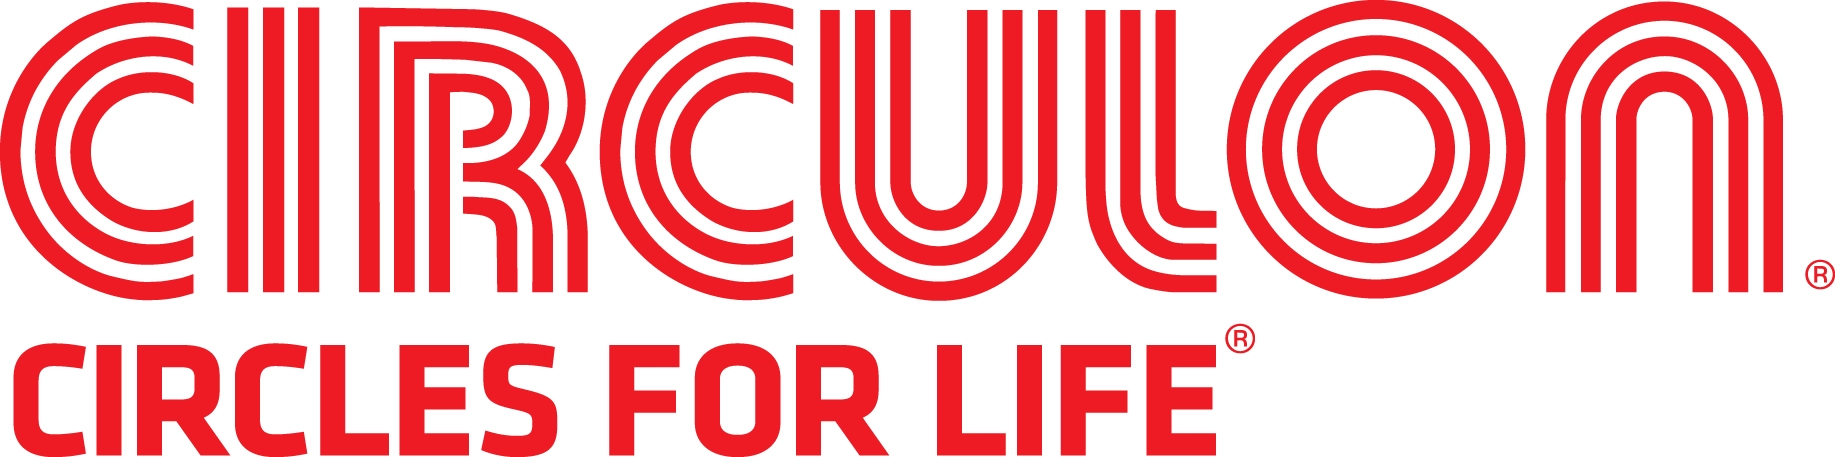 Circulon logo